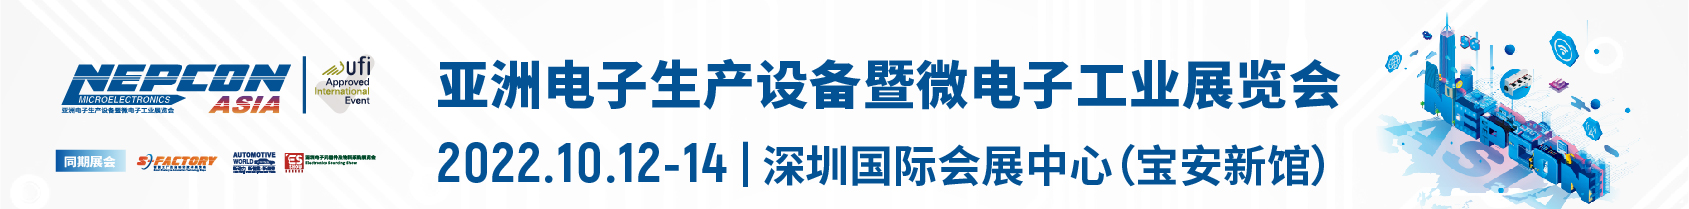 第三十一届中国国际电子生产设备暨微电子工业展览会